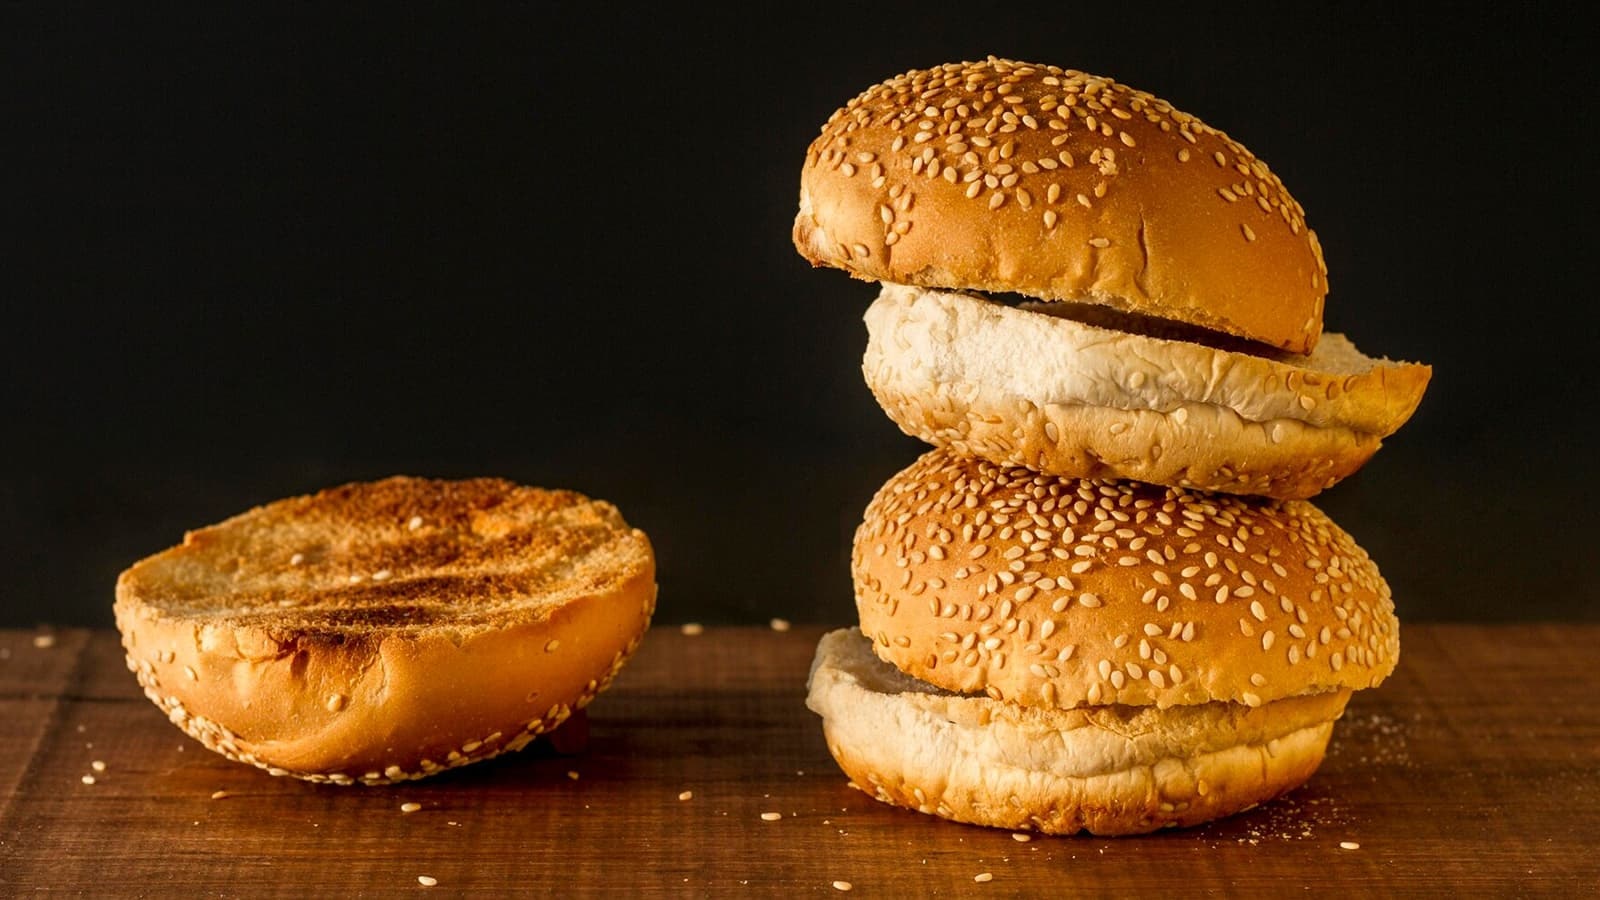 Wie viele Kalorien hat ein Burger? Bild von mehreren Brötchen, die für Burger verwendet werden.